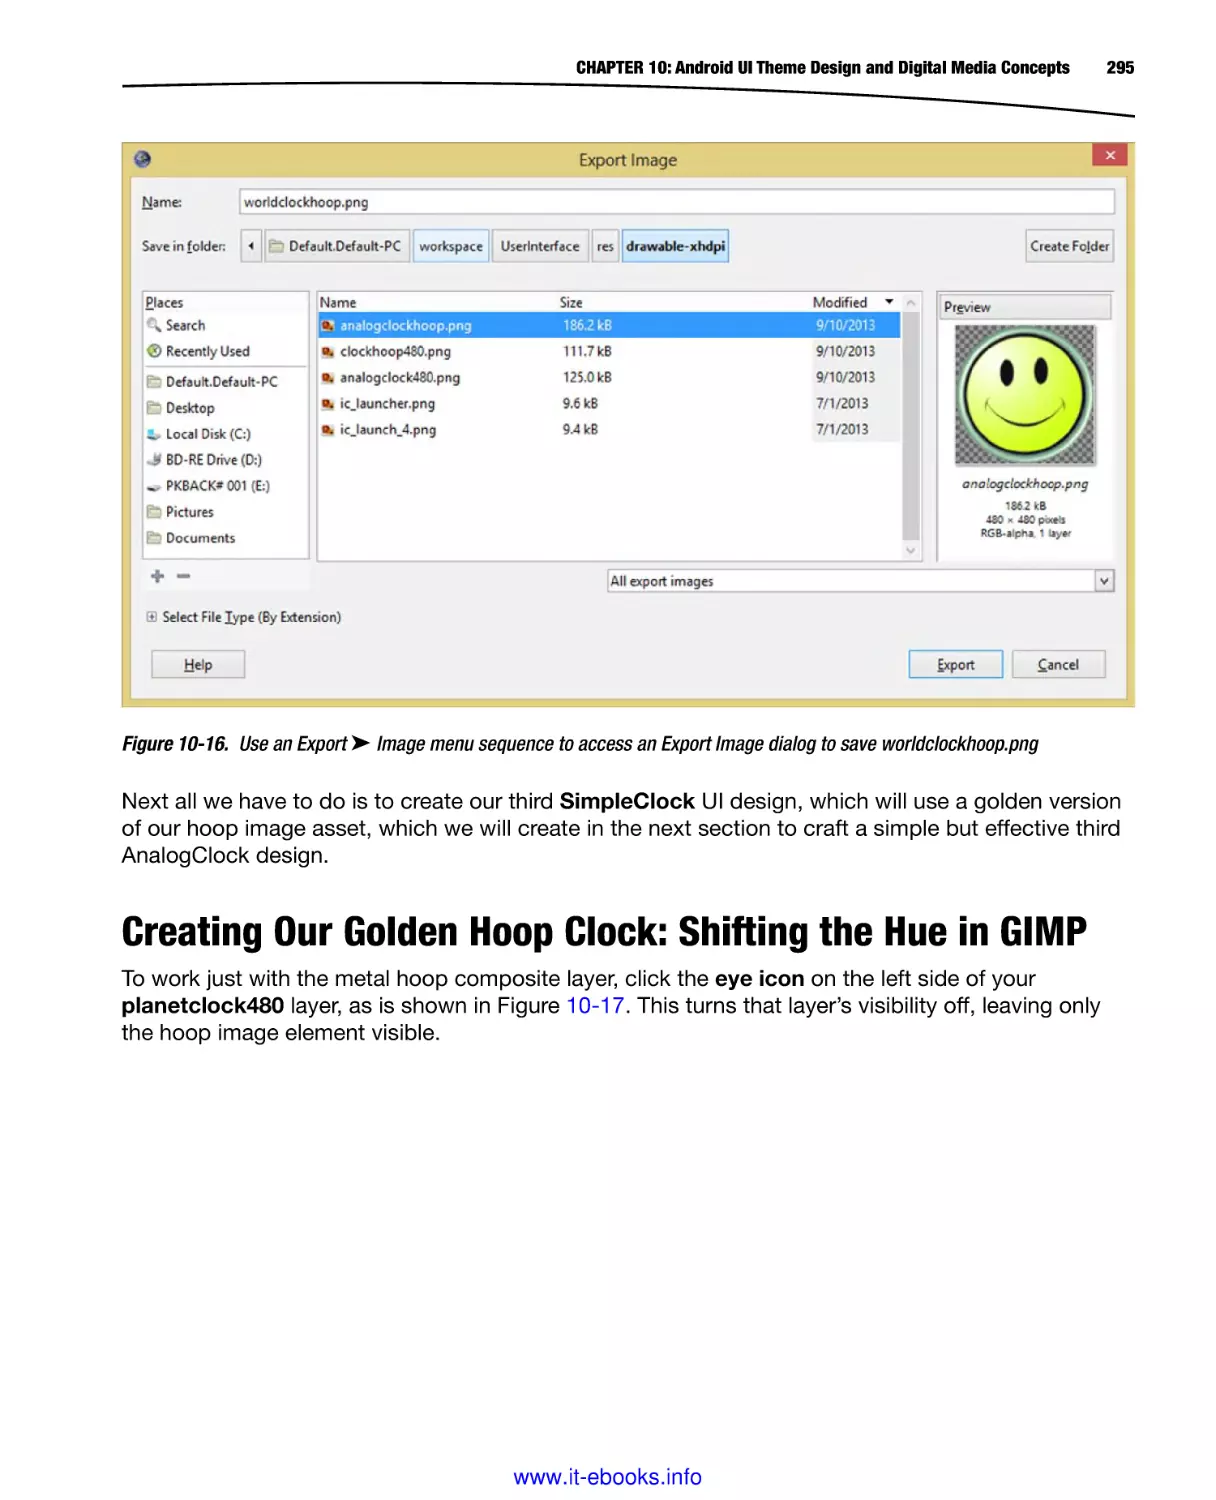 Creating Our Golden Hoop Clock